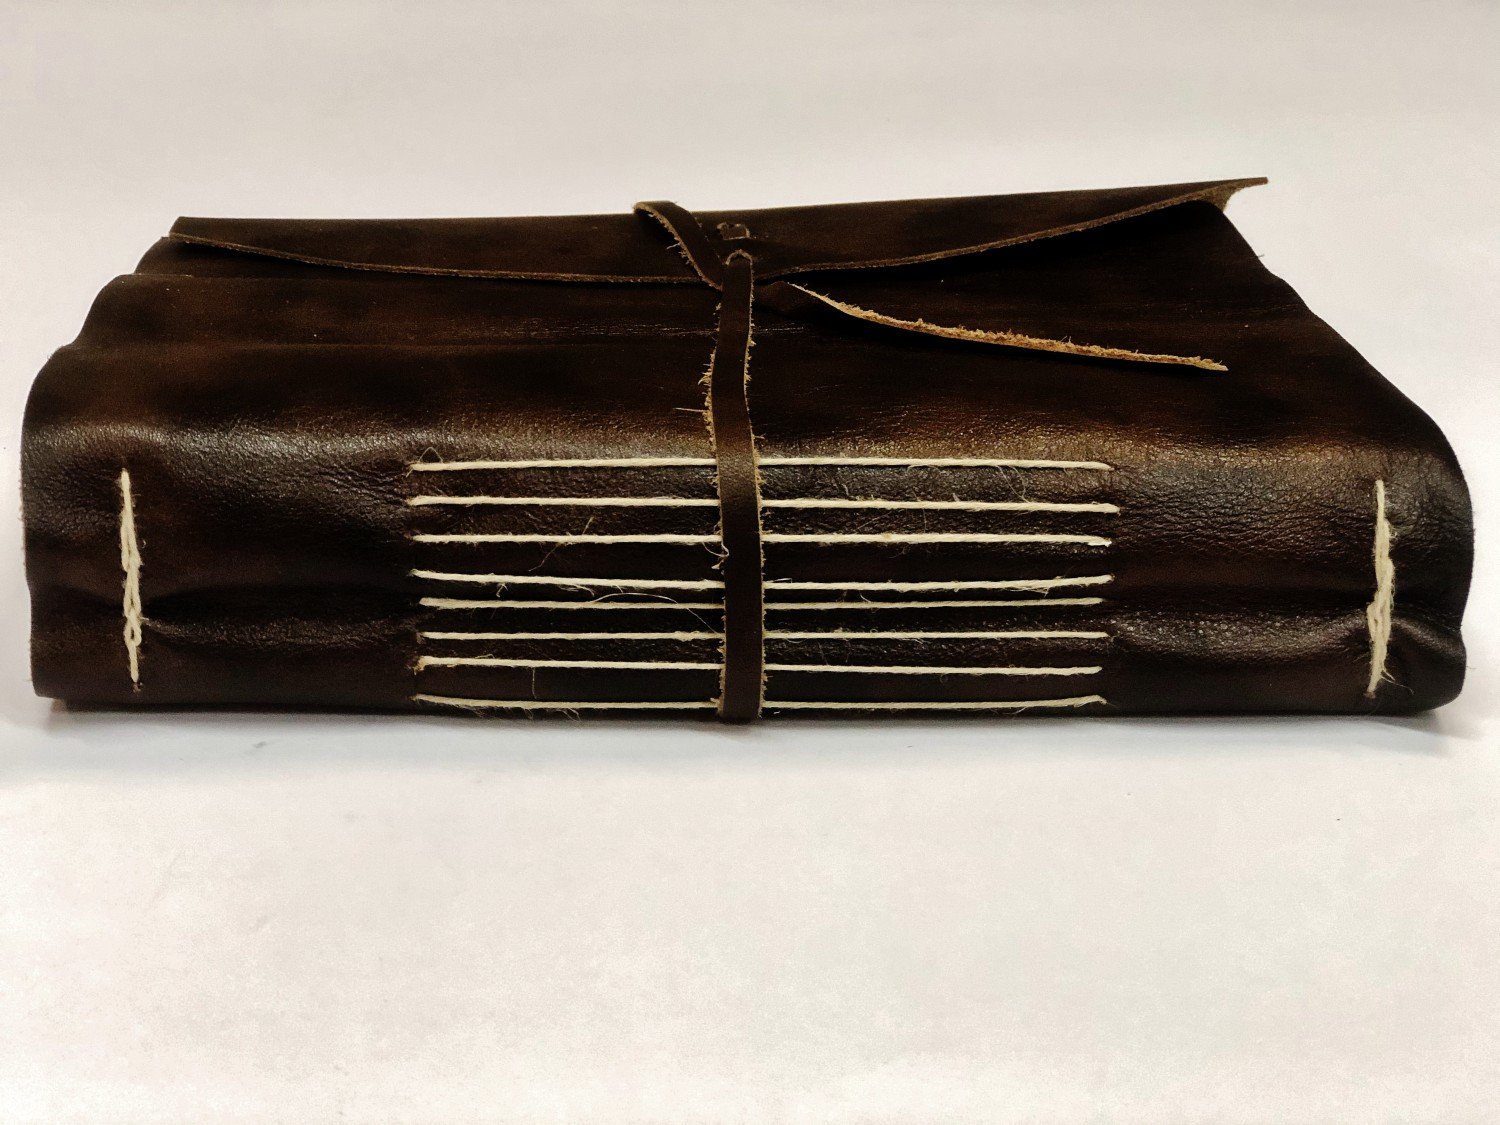 Diario celtico in pelle, marrone (21x14 cm.)) ⚔️ Negozio Medievale